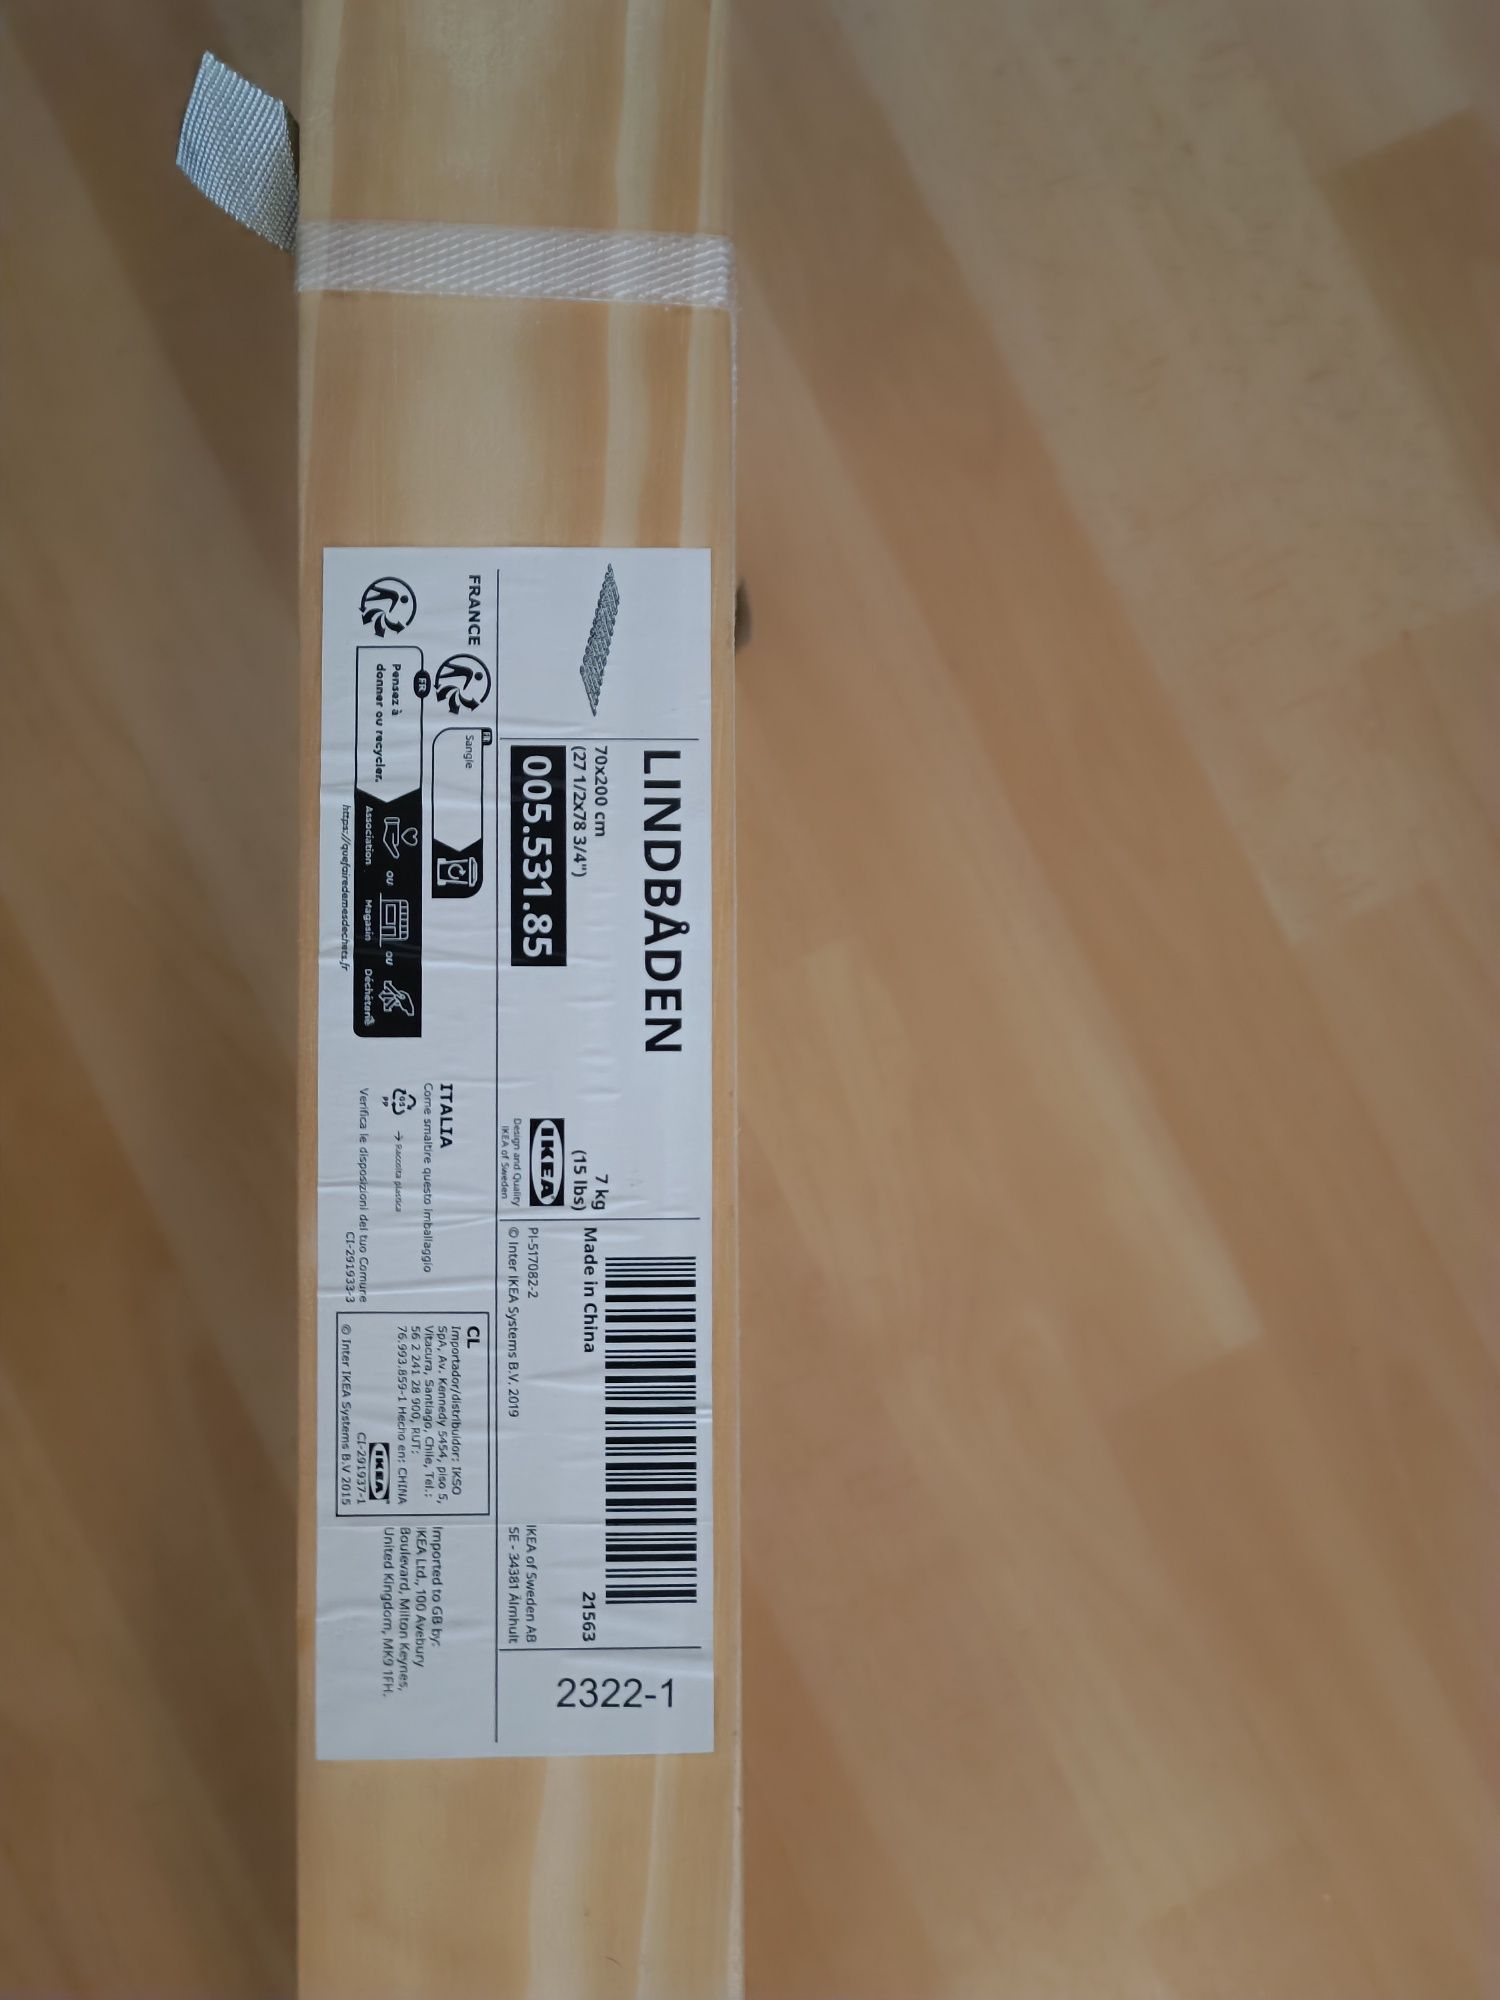 Ripas madeira - 70x200 IKEA Novas